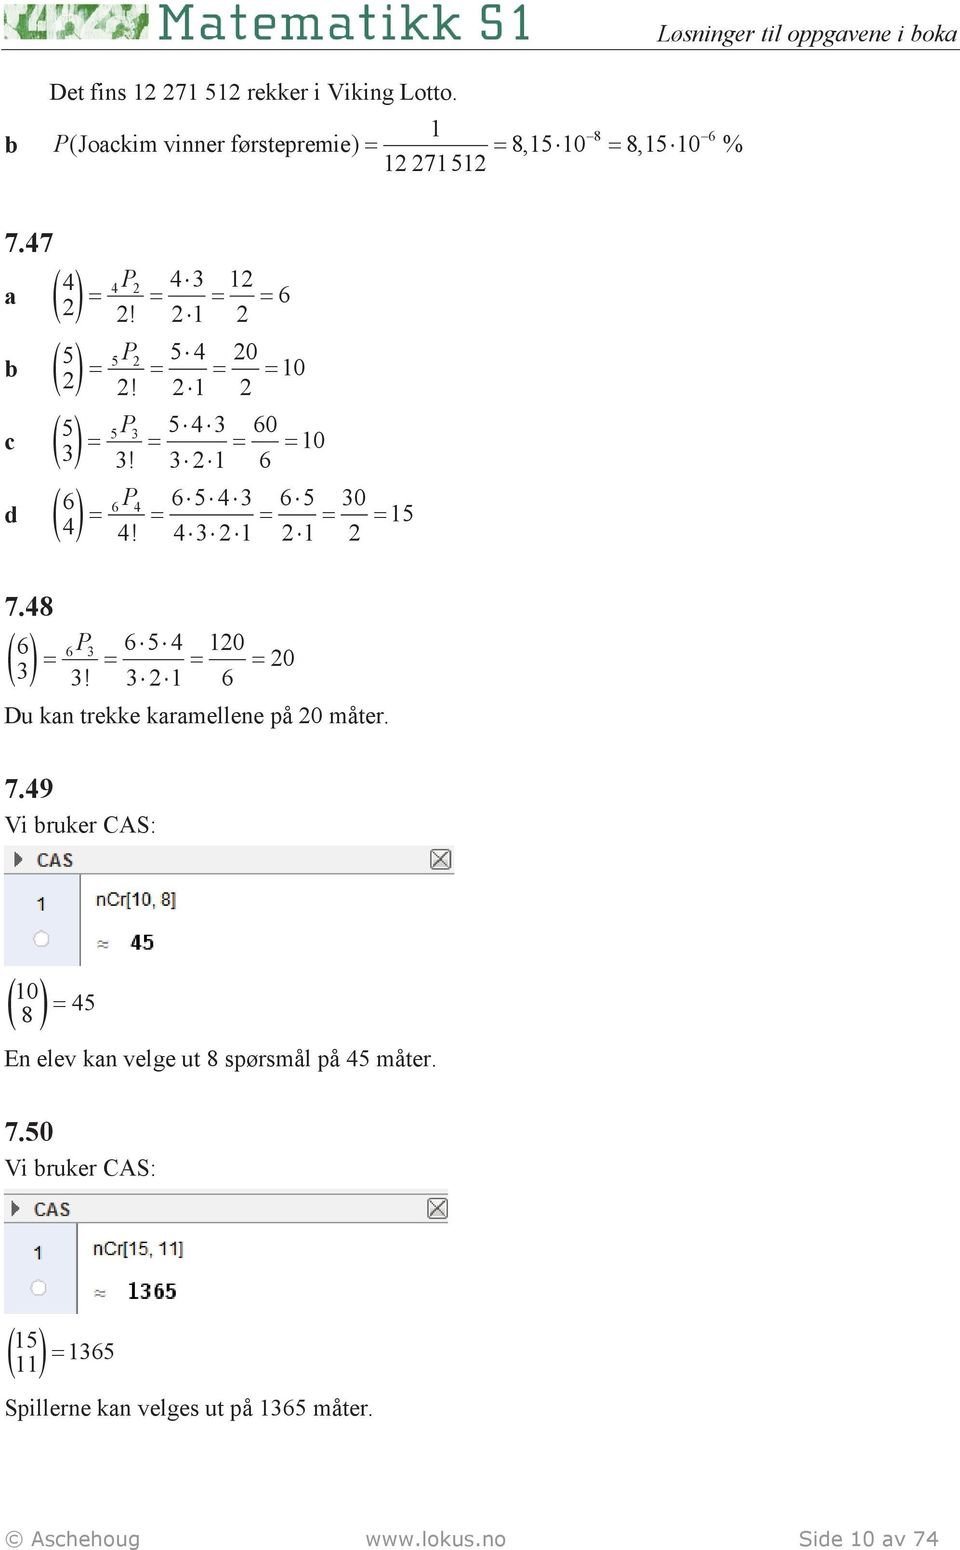 3 2 1 6 P4 6543 65 30 = = = = = 15 4 4! 4321 21 2 7.48 6 6P3 6 5 4 120 = = = = 20 3 3! 3 2 1 6 Du kan trekke karamellene på 20 måter. 7.49 Vi ruker CAS: 10 ( 8 ) = 45 En elev kan velge ut 8 spørsmål på 45 måter.